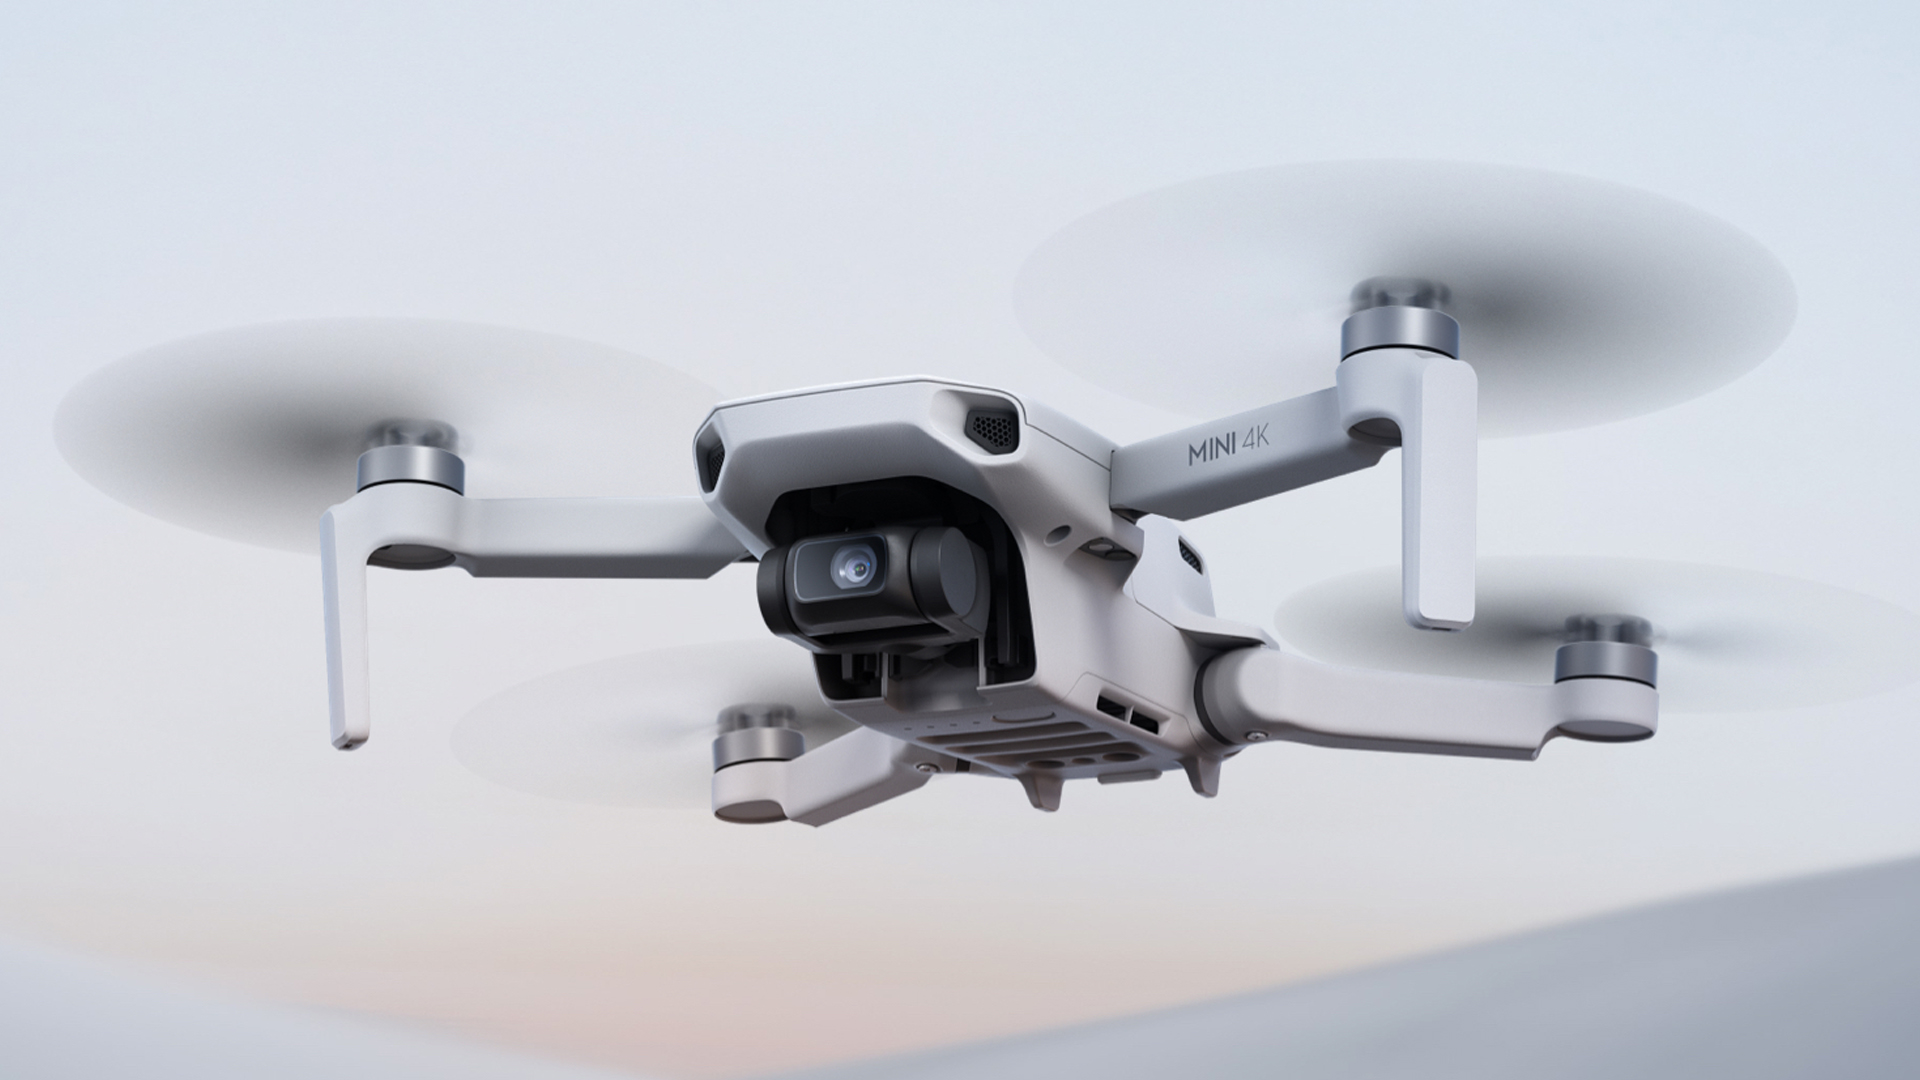 Çok Konuşulacak Yeni Drone: DJI Mini 4K Geliyor!